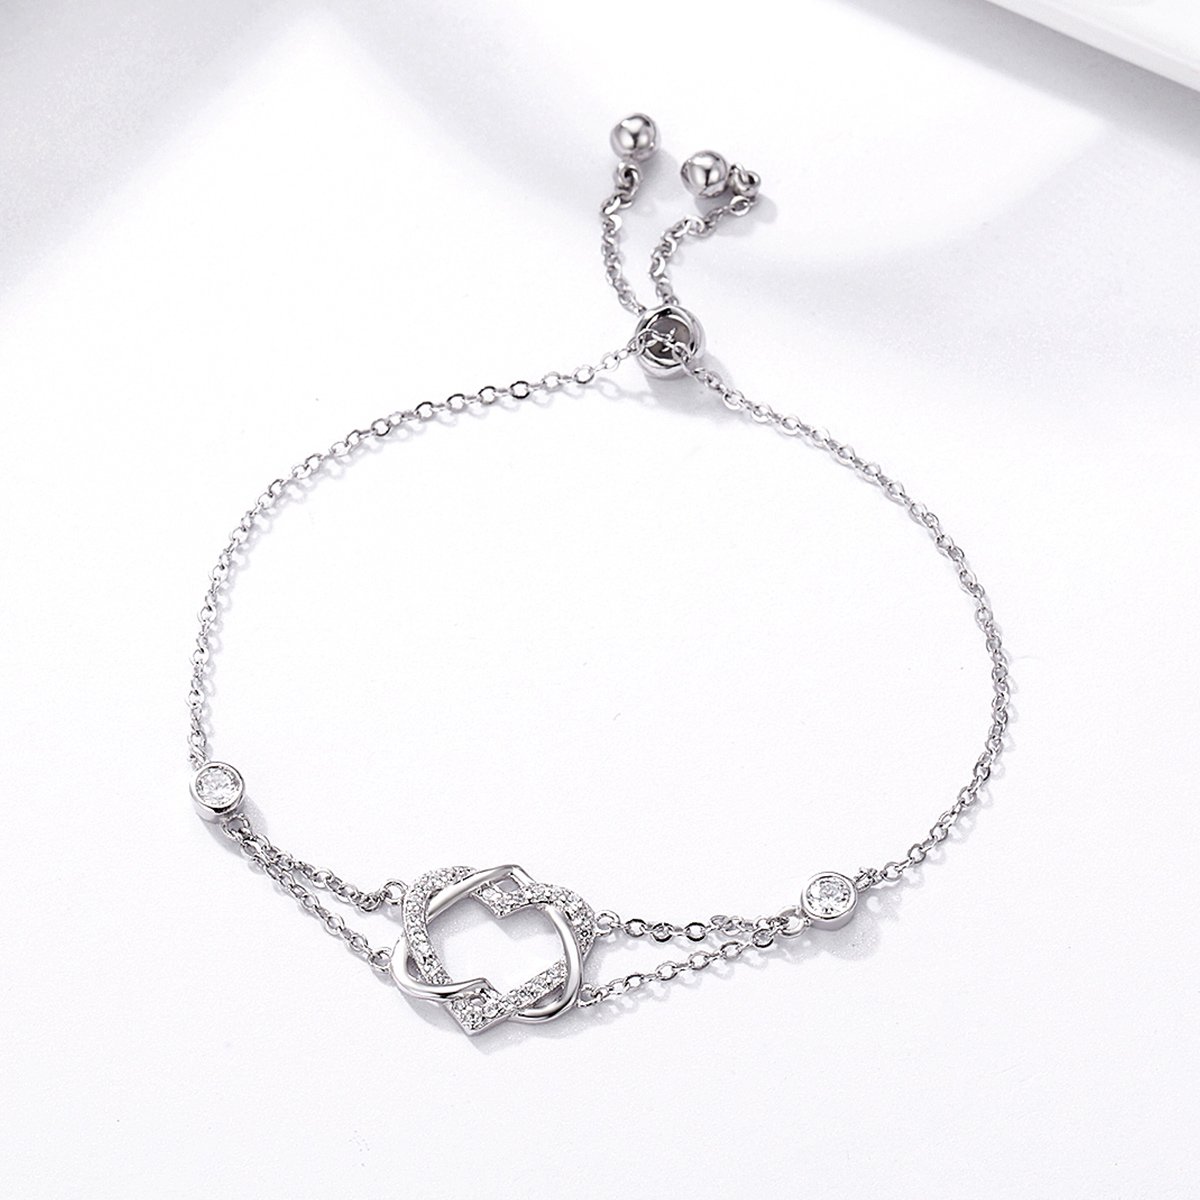 Twisted Double Heart Luxury 925 Sterling Silver Bracelet - Aisllin Jewelry